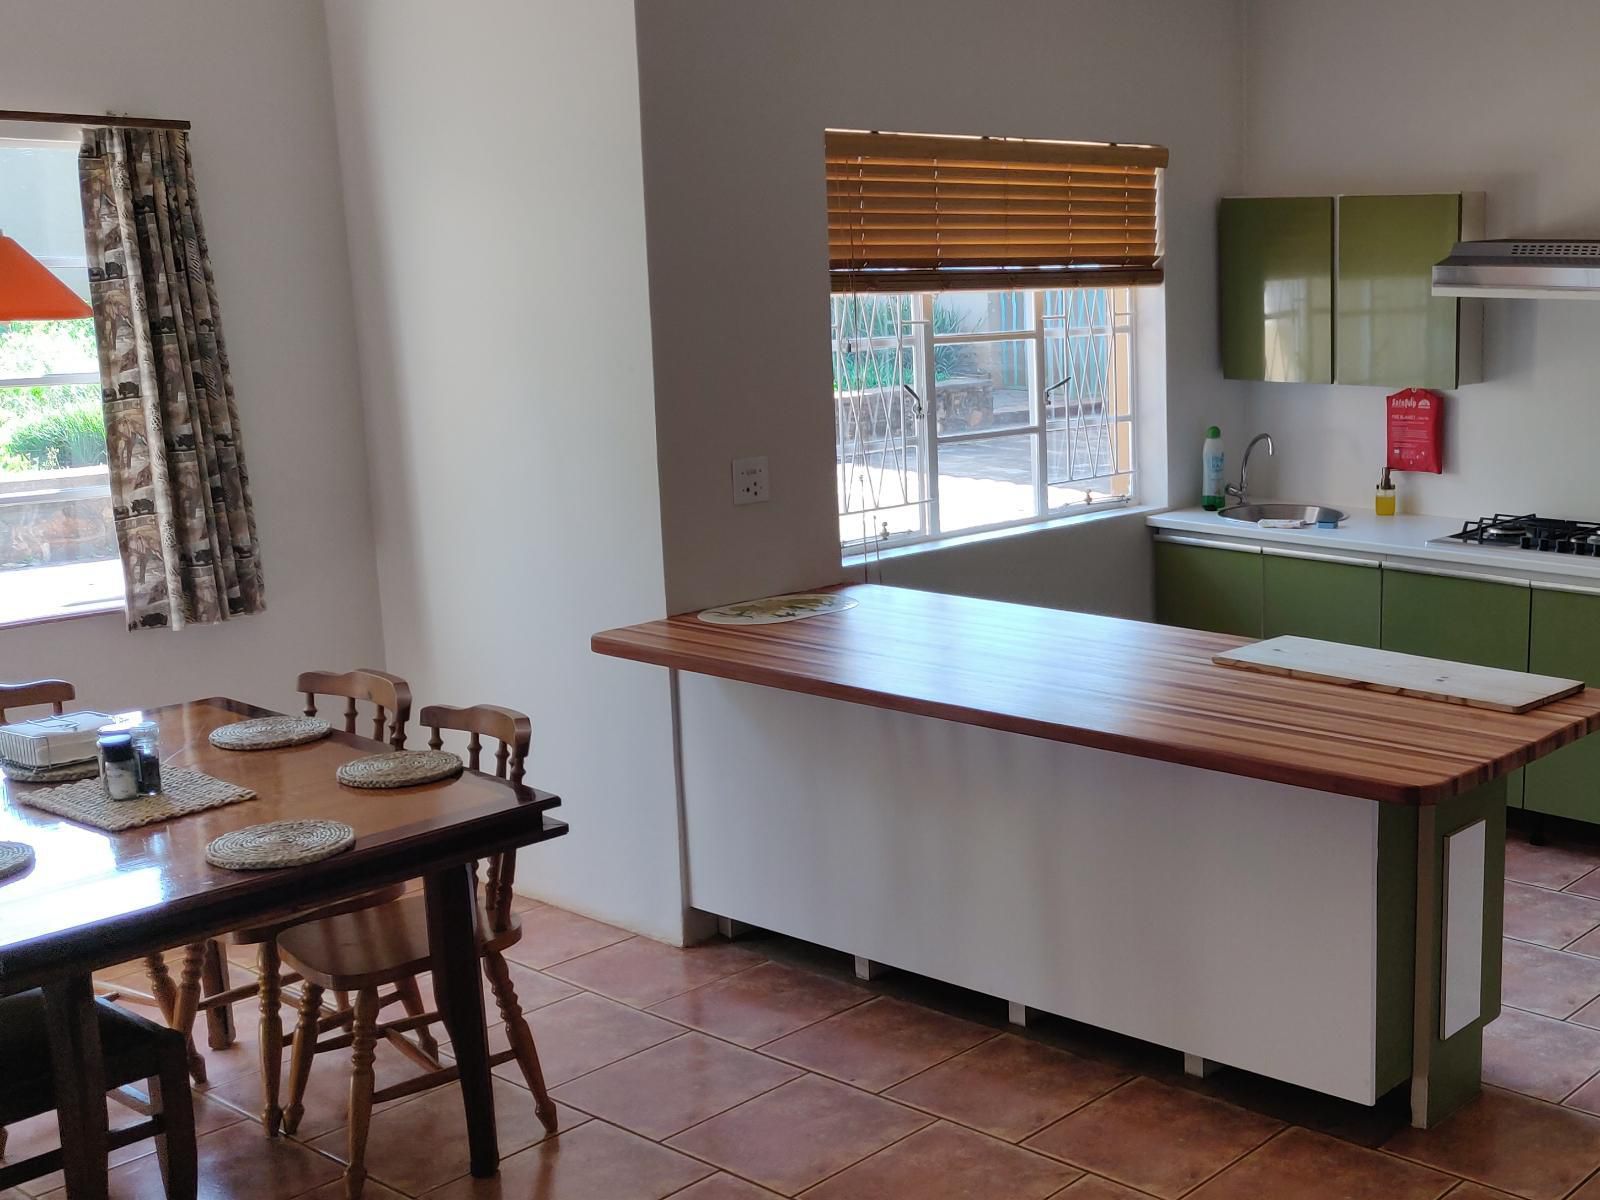 Boschoek Farm Modjadjiskloof Limpopo Province South Africa Kitchen